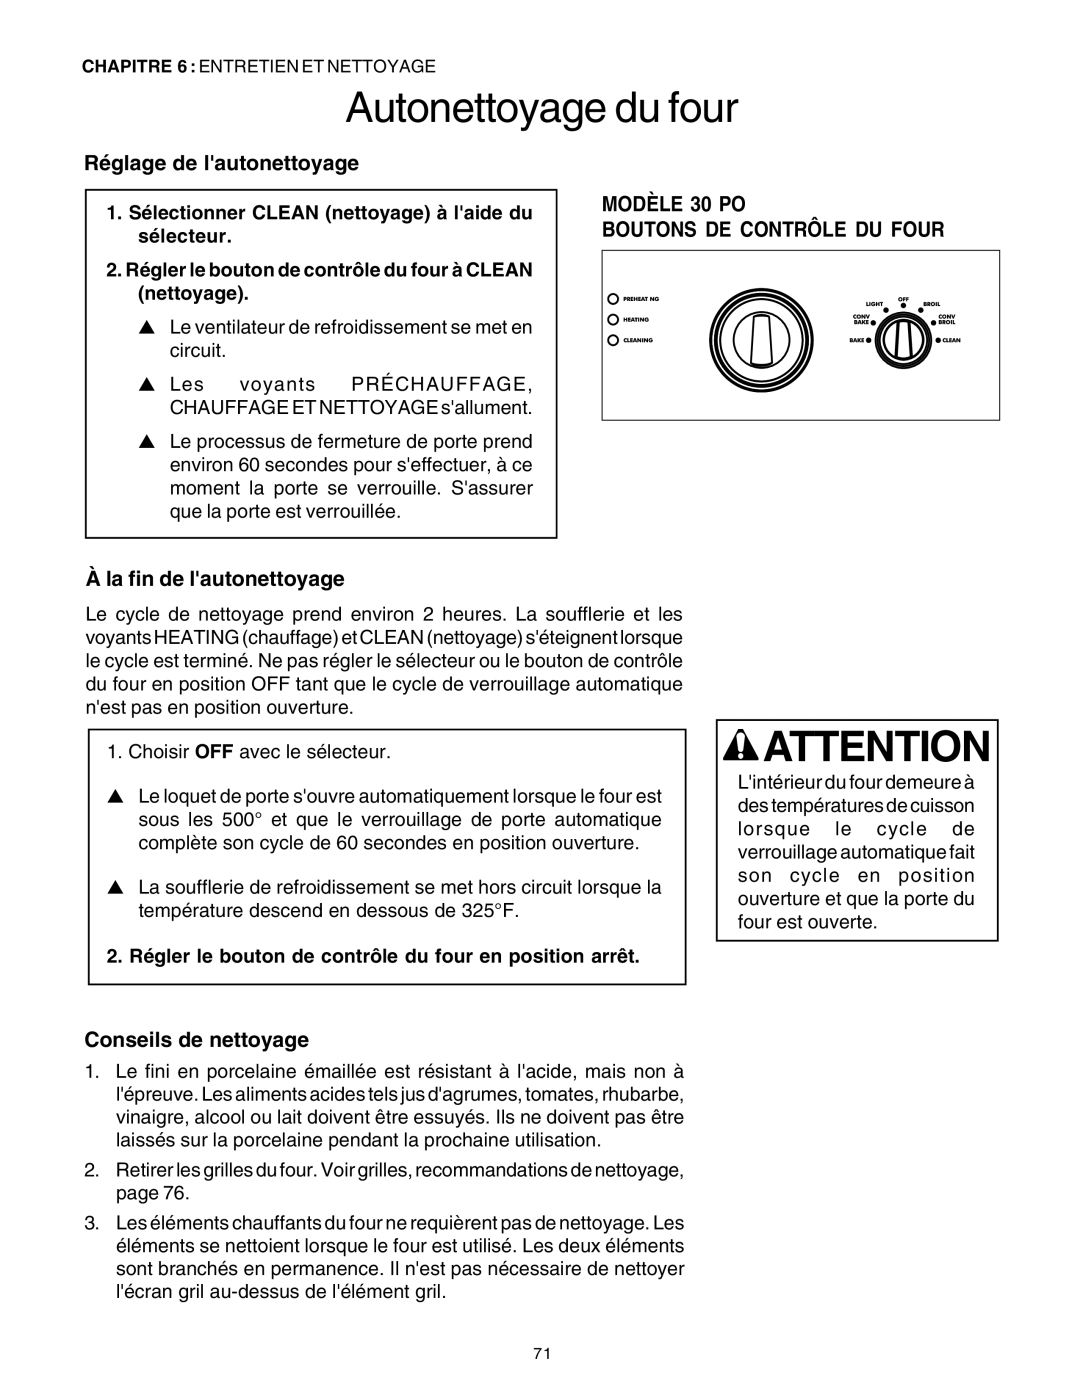 Thermador DP30 manual Autonettoyage du four, Réglage de lautonettoyage, Àla fin de lautonettoyage, Conseils de nettoyage 